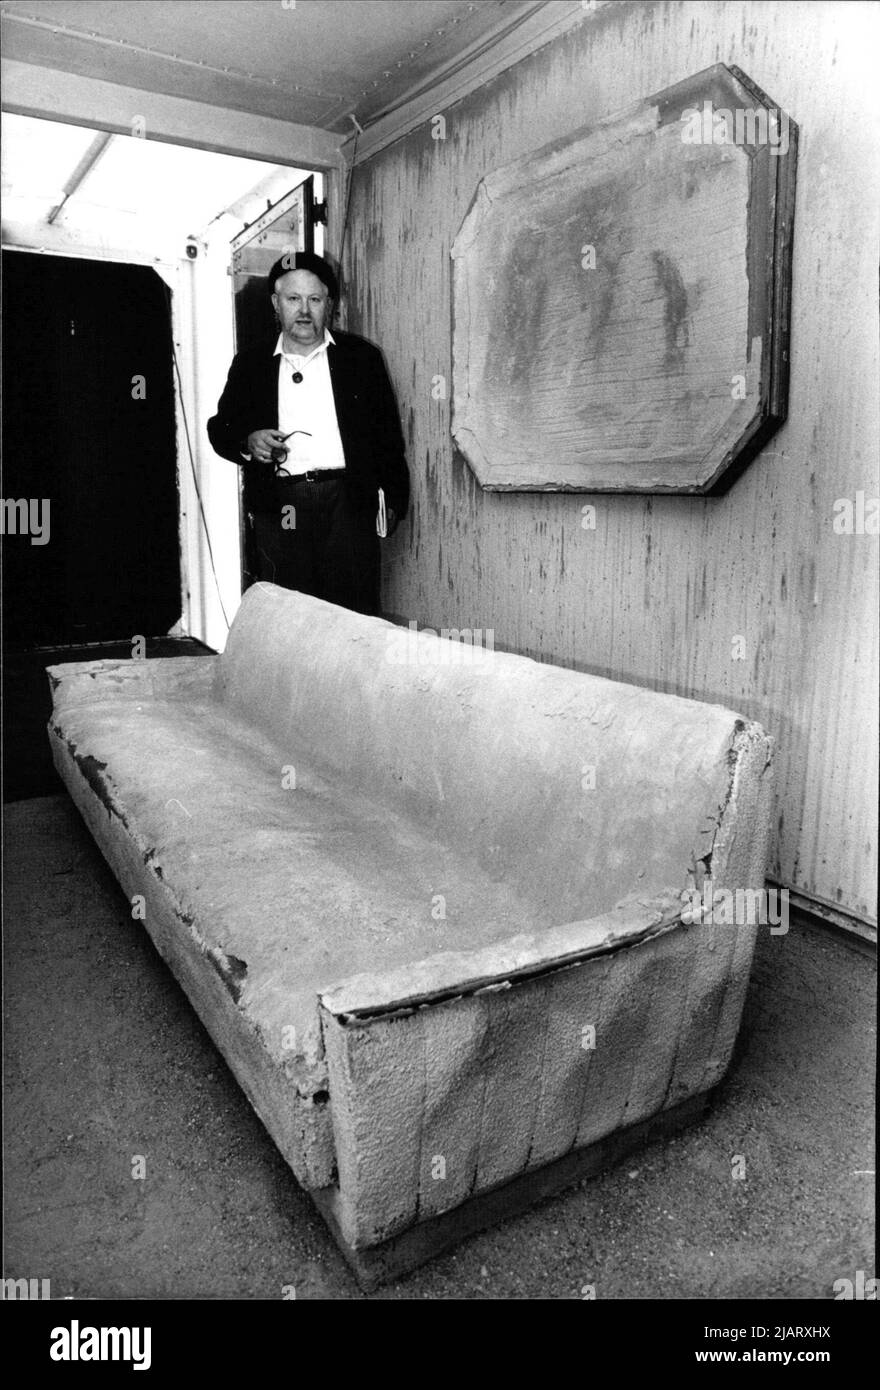 Der Künstler Wolf Vostell im Beton-Wohnzimmer seines Museums auf Rädern. Stock Photo